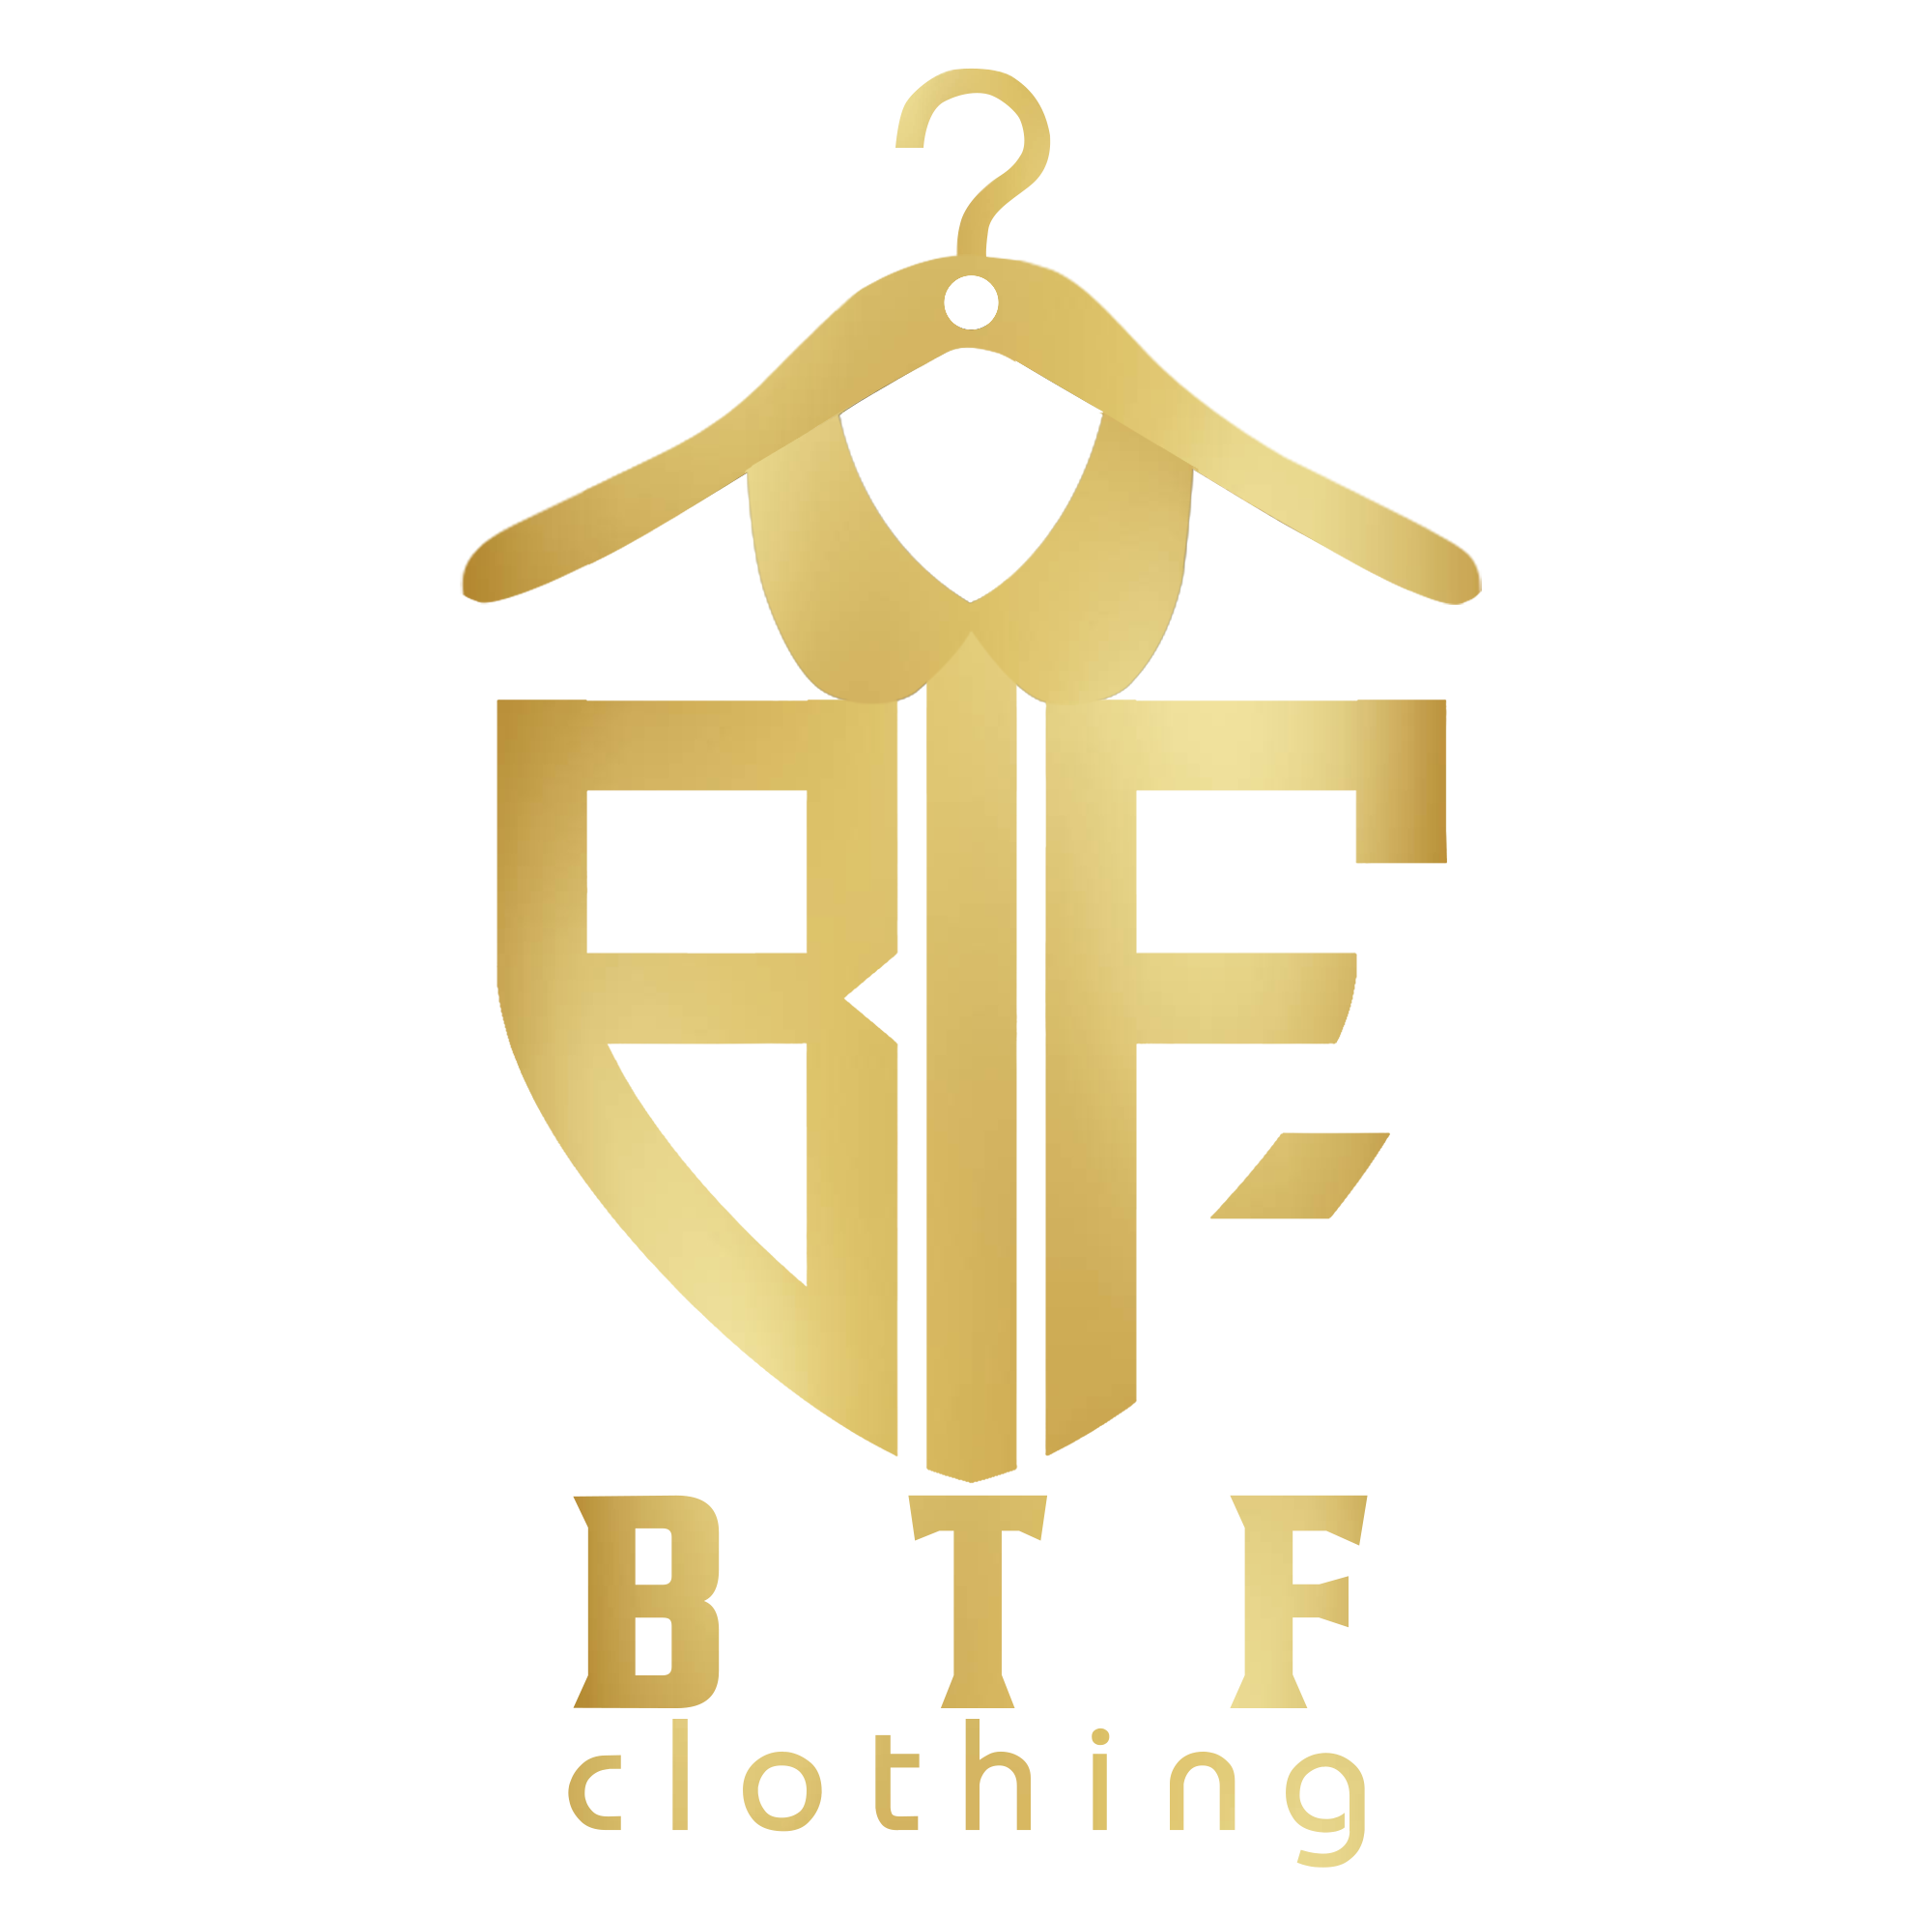 BTF Clothing